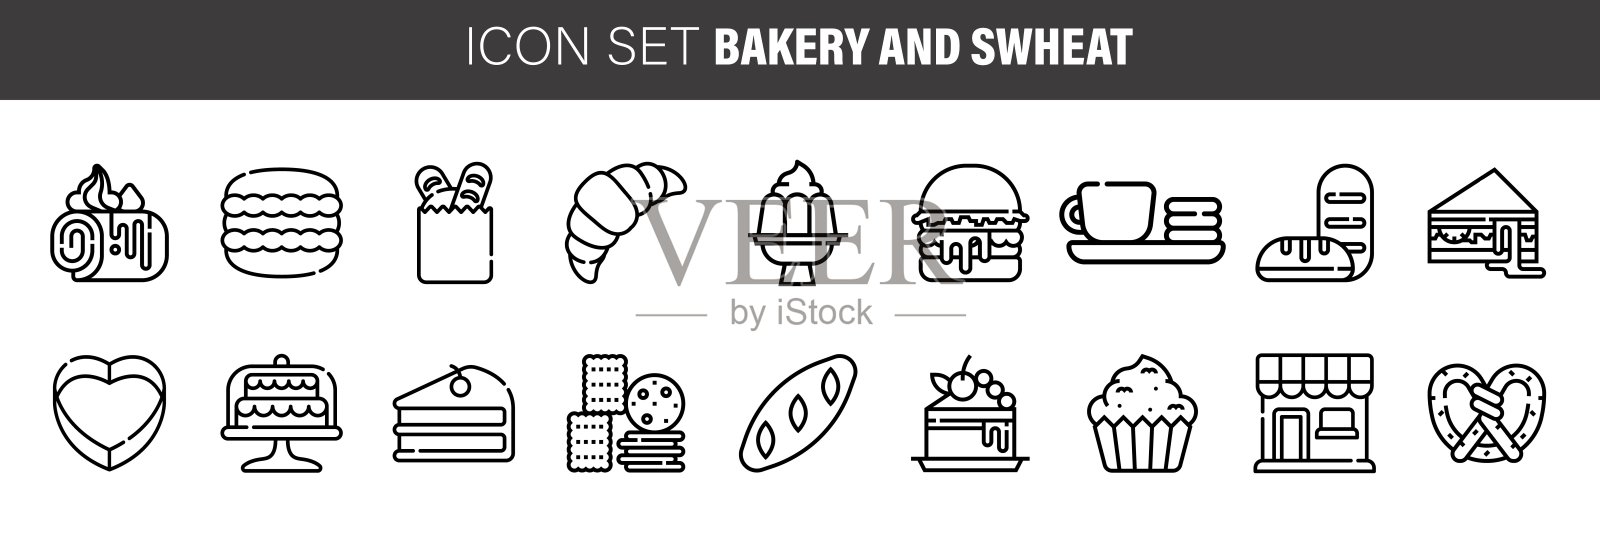 小麦和面包店系列图标集。包括面包，甜甜圈，法式长棍，杏仁，派，和更多的图标。图标素材